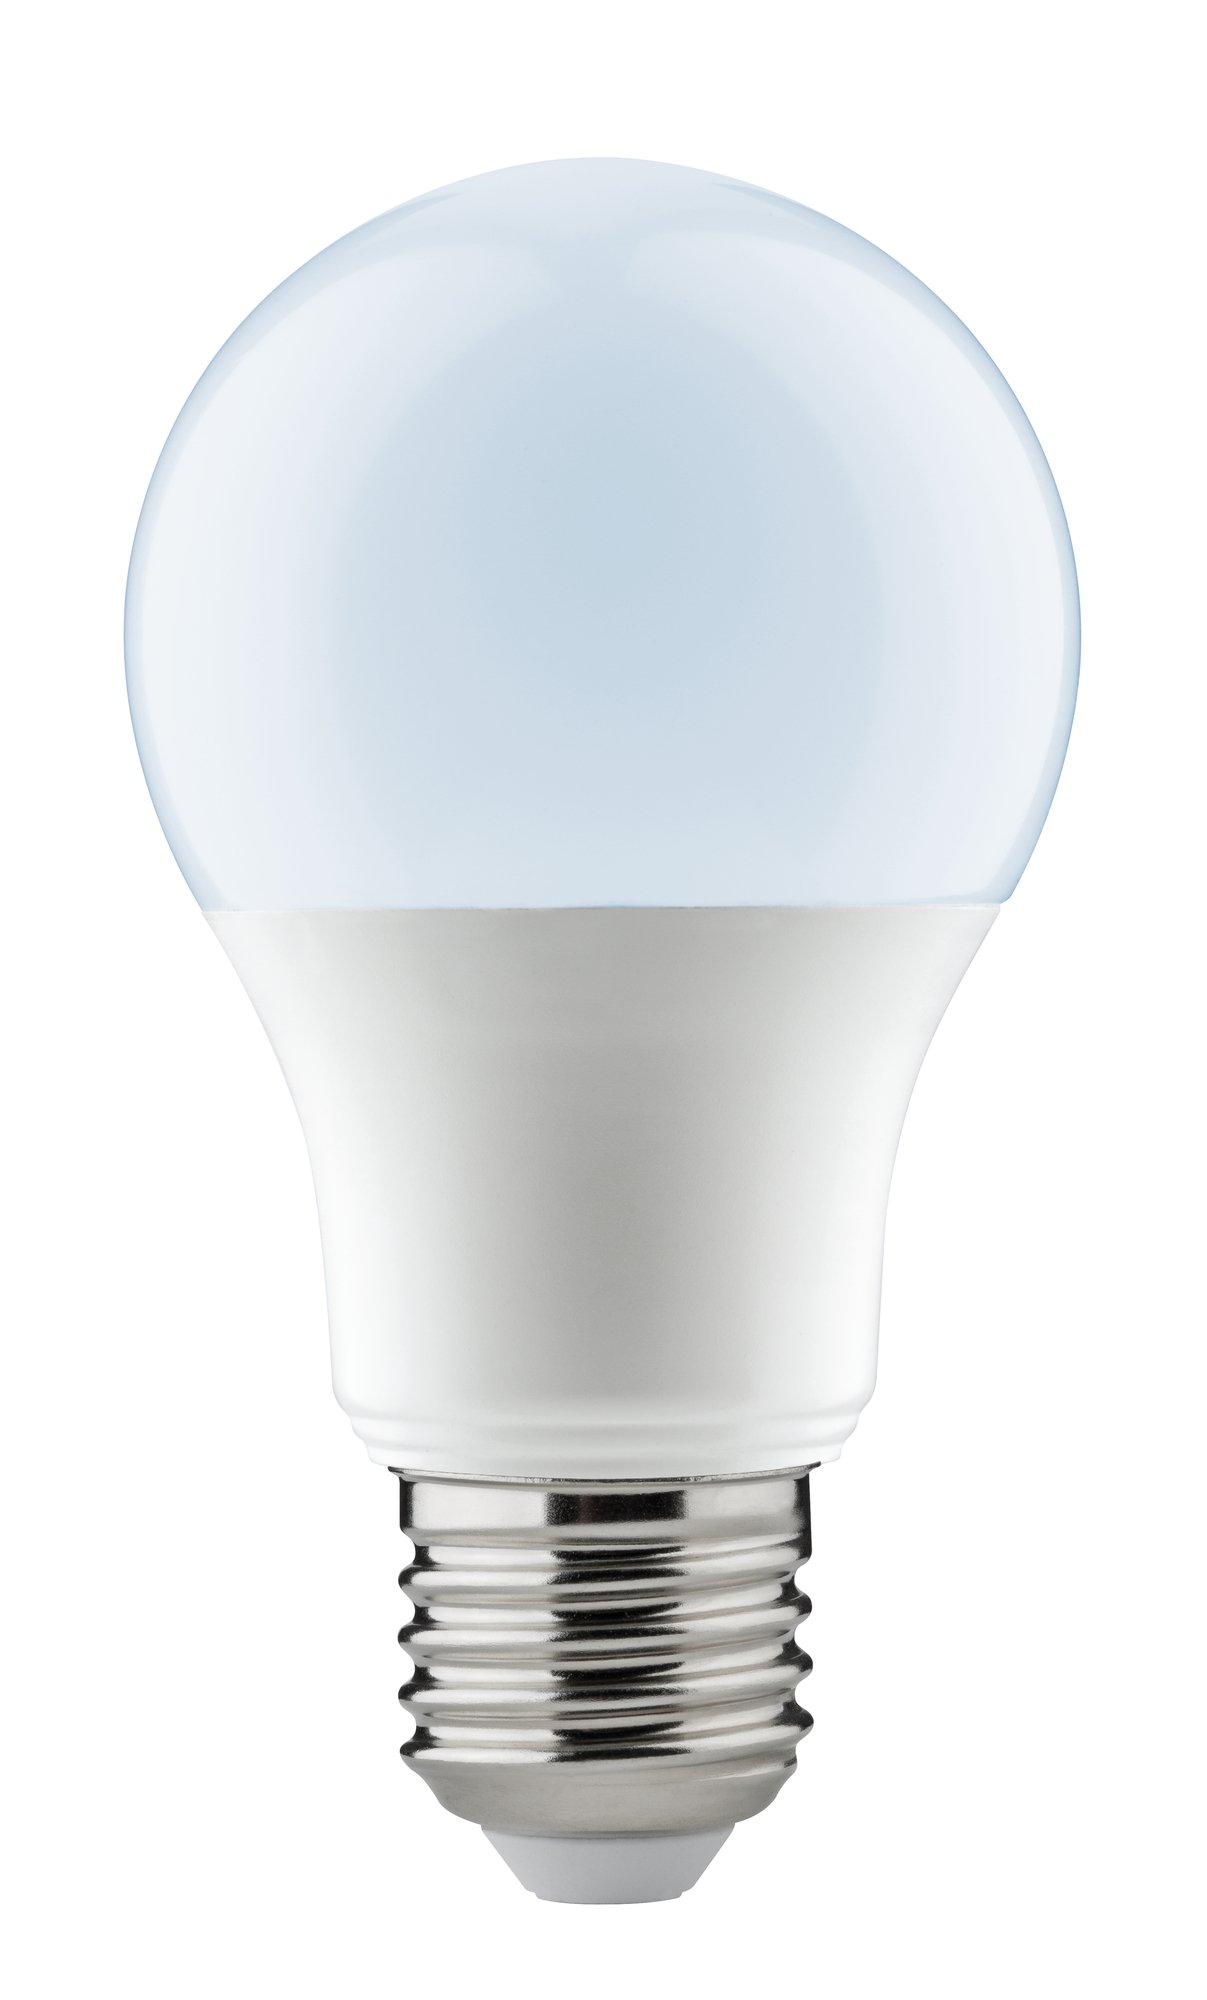 LED AGL Whiteswitch 8,5 W E27 met trapsgewijze schakeling voor 3 verschillende tinten wit